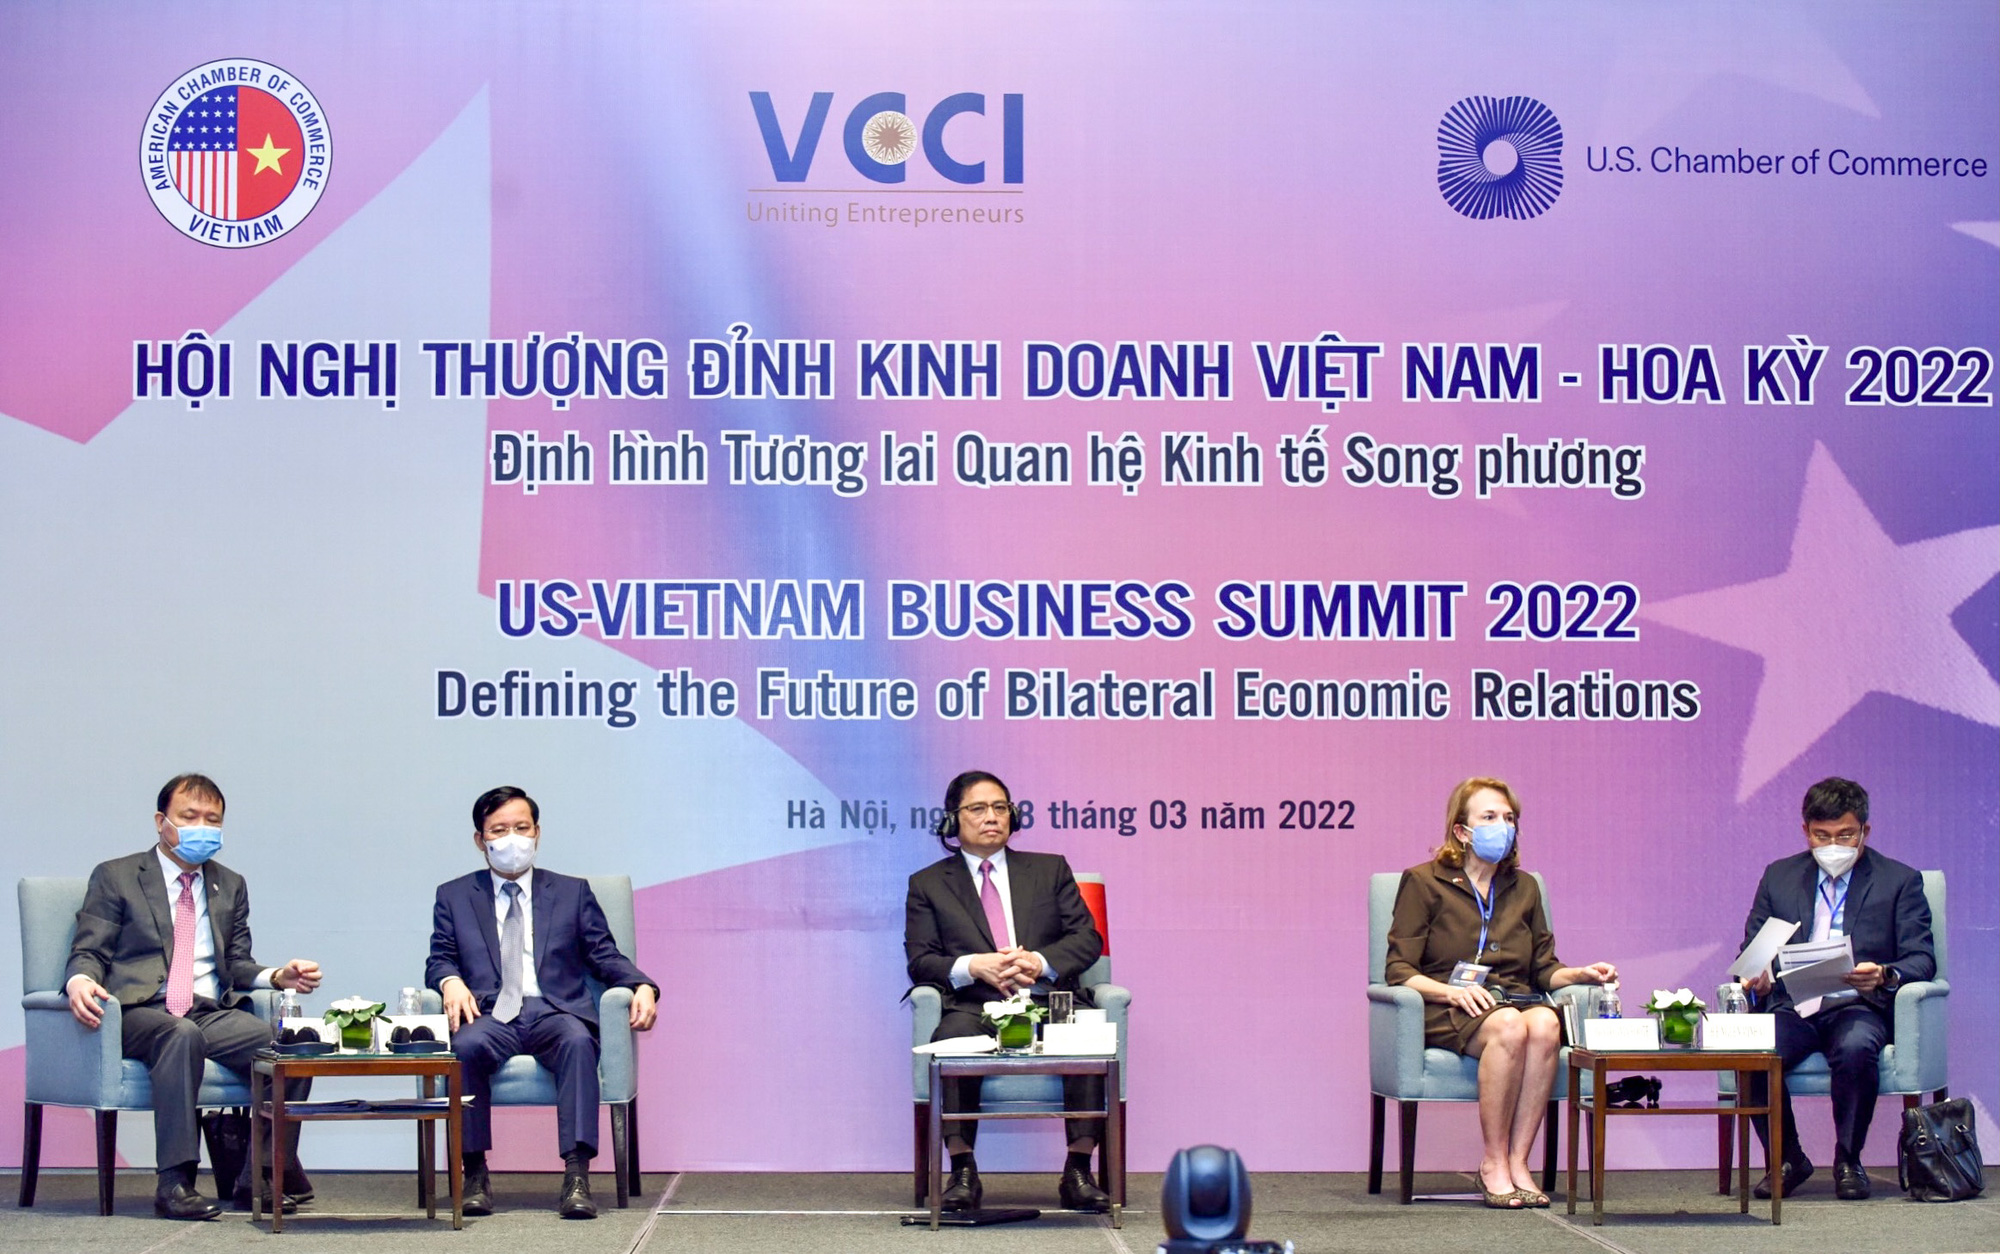 Thúc đẩy quan hệ Việt Nam - Hoa Kỳ với 'lợi ích hài hòa, rủi ro chia sẻ' - Ảnh 4.